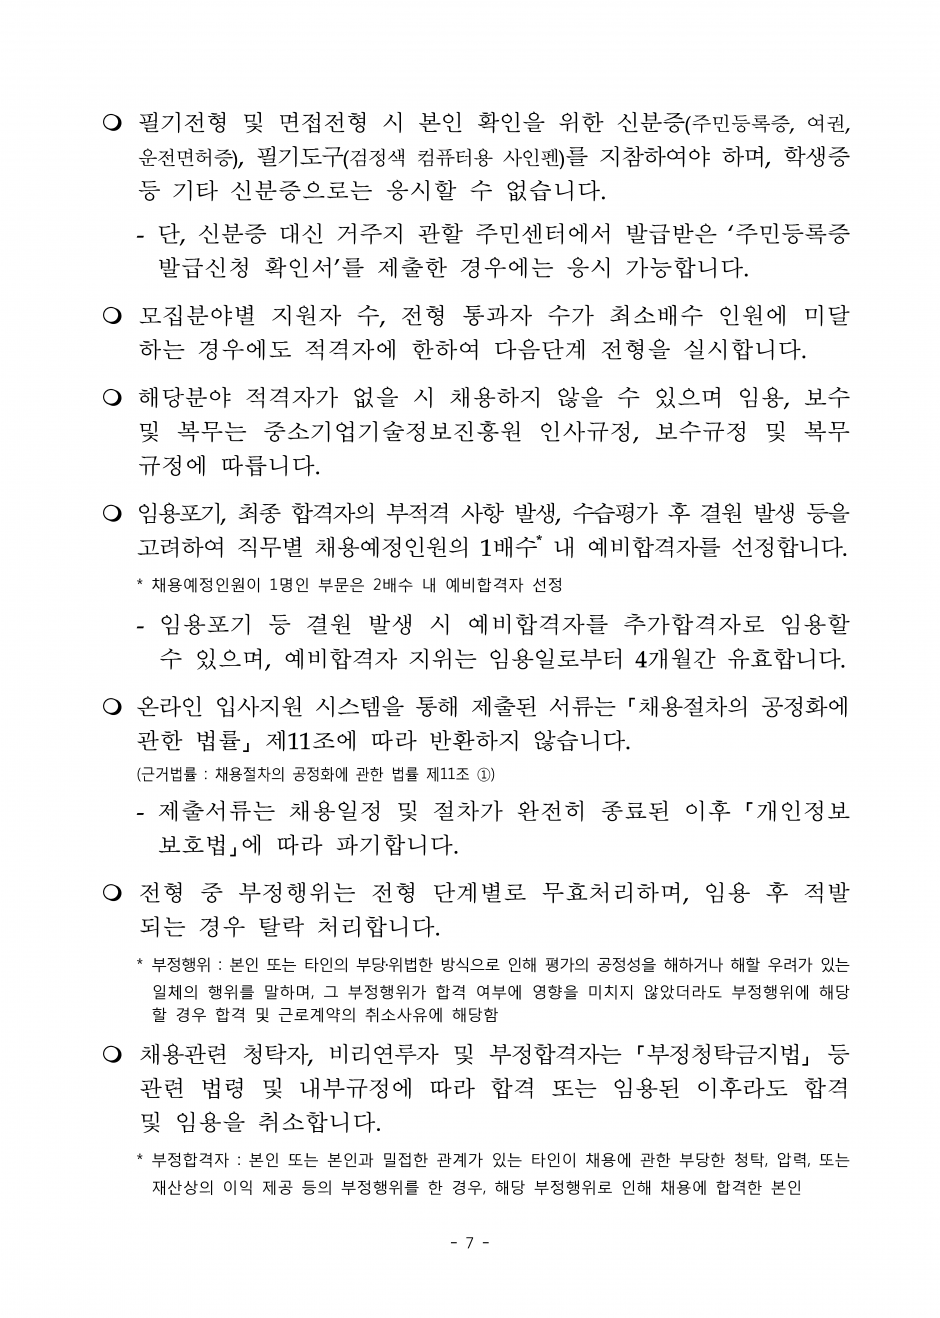 2019년 중소기업기술정보진흥원 4차 신규직원 채용공고_페이지_7